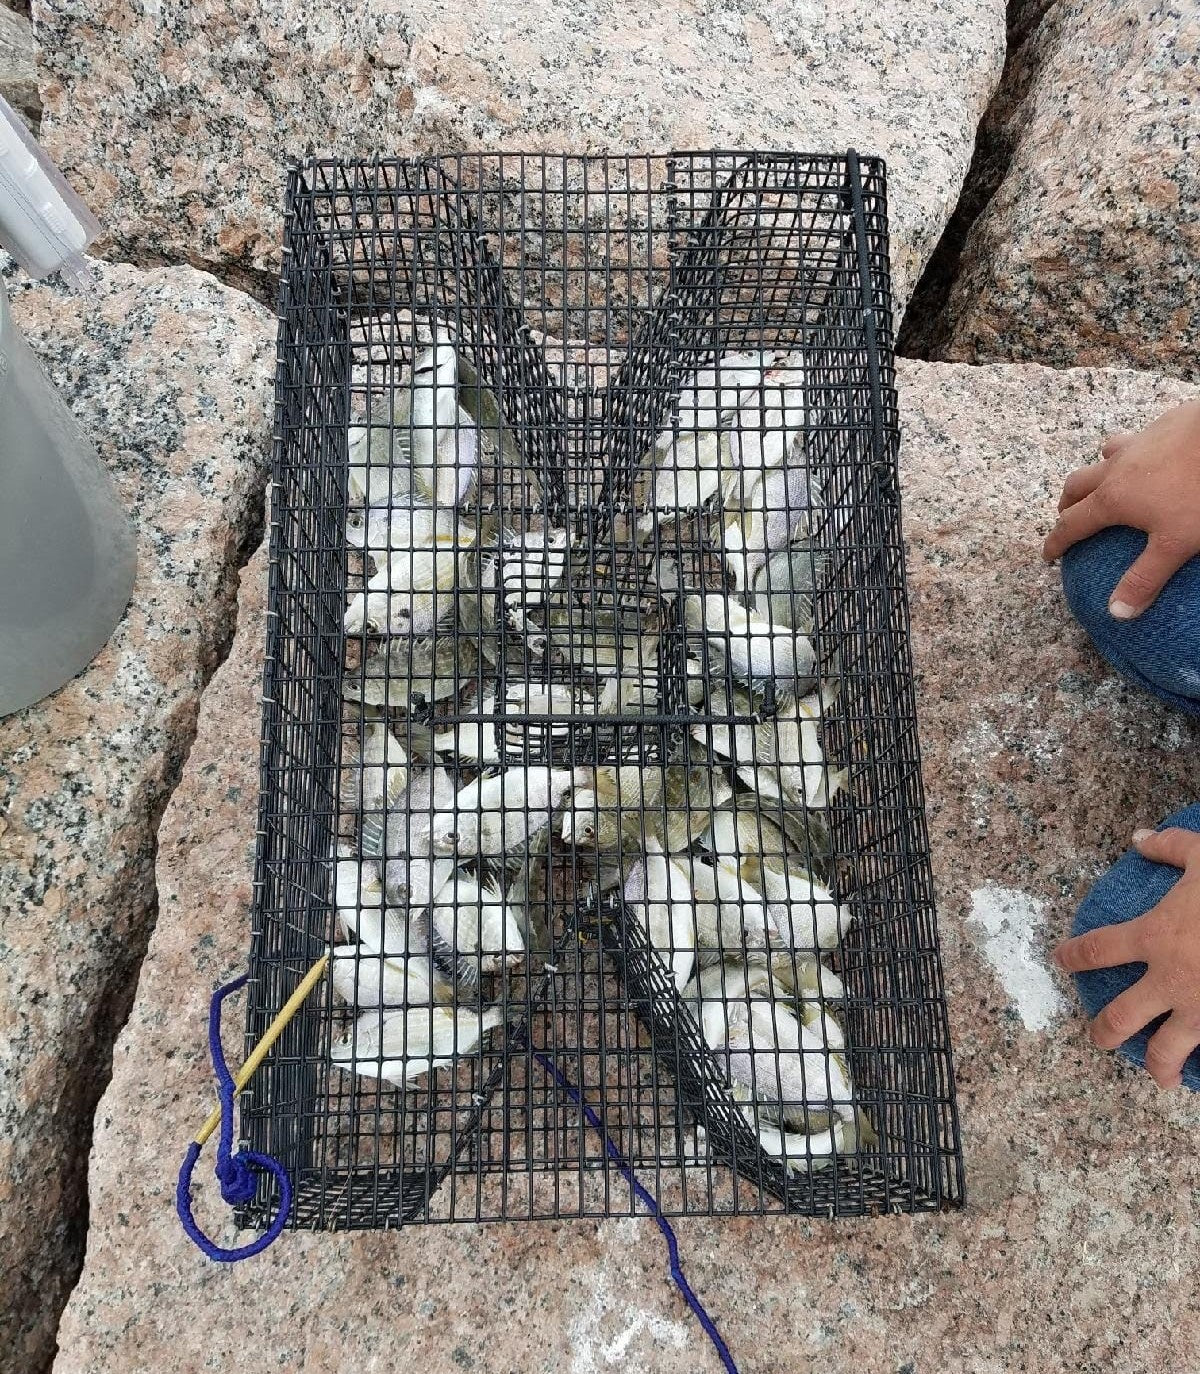 Trap Construction  Pinfish Traps, Live Bait Pens, Crab Traps